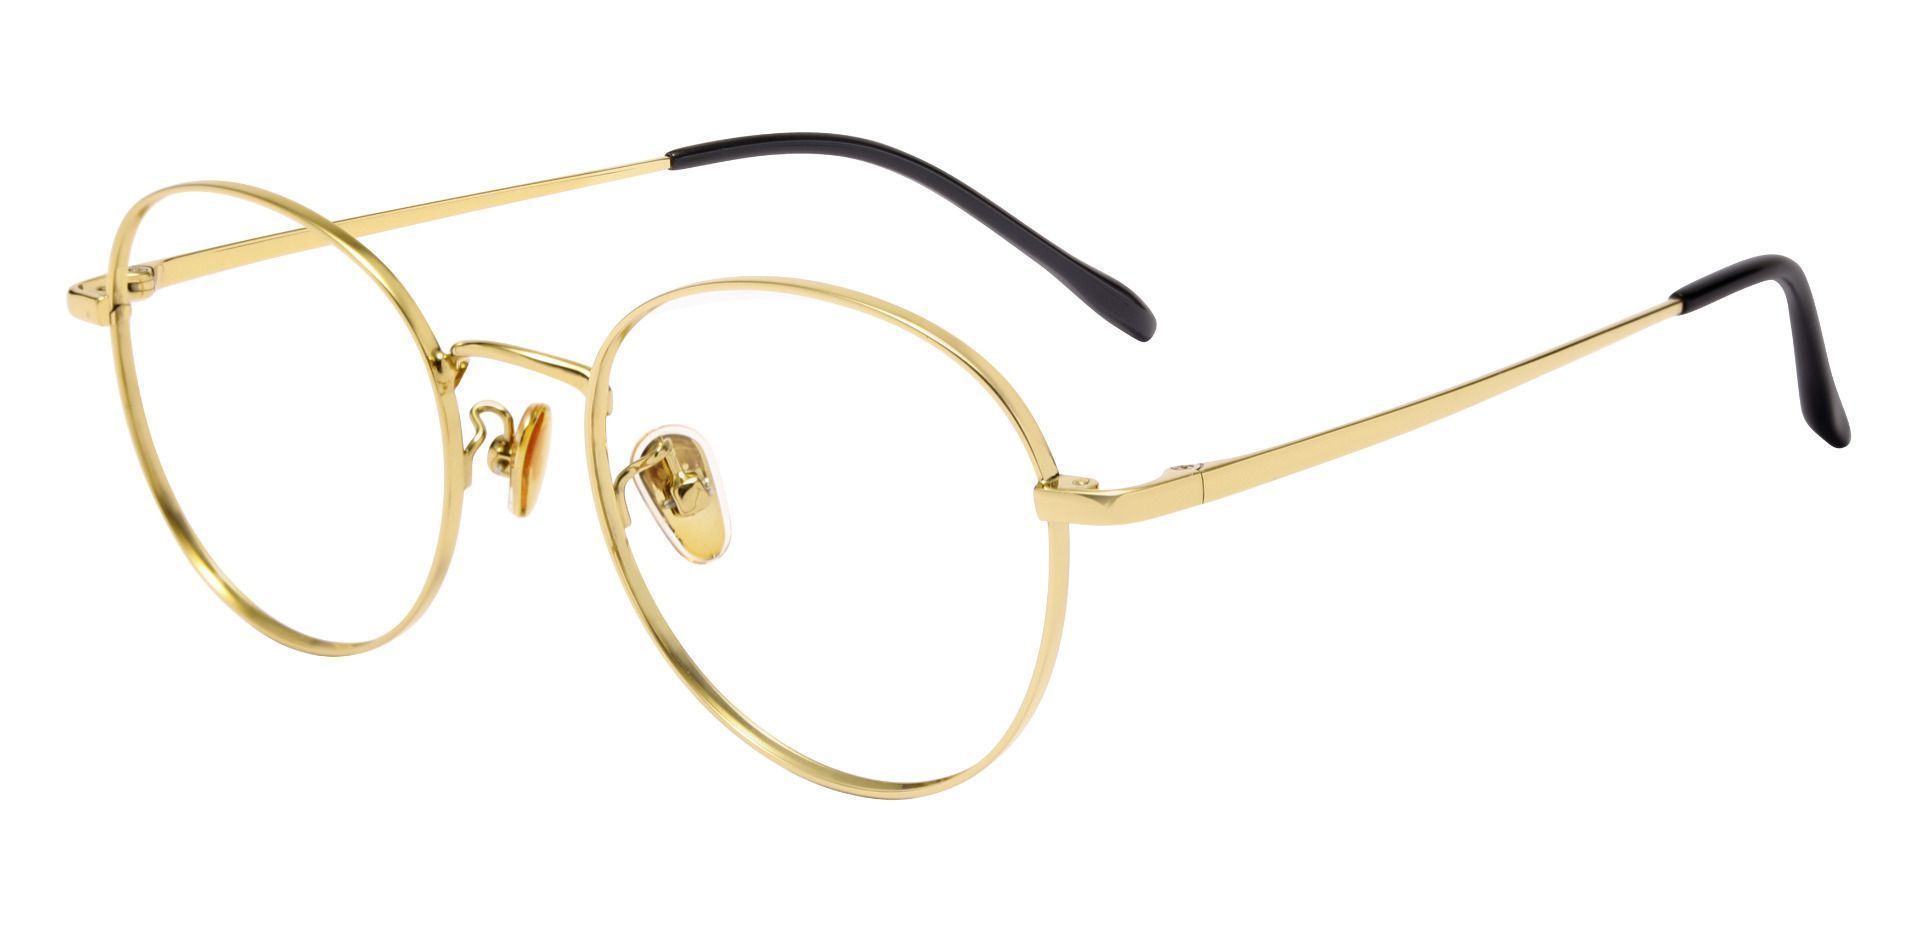 Lisbon Round Progressive Glasses - Gold